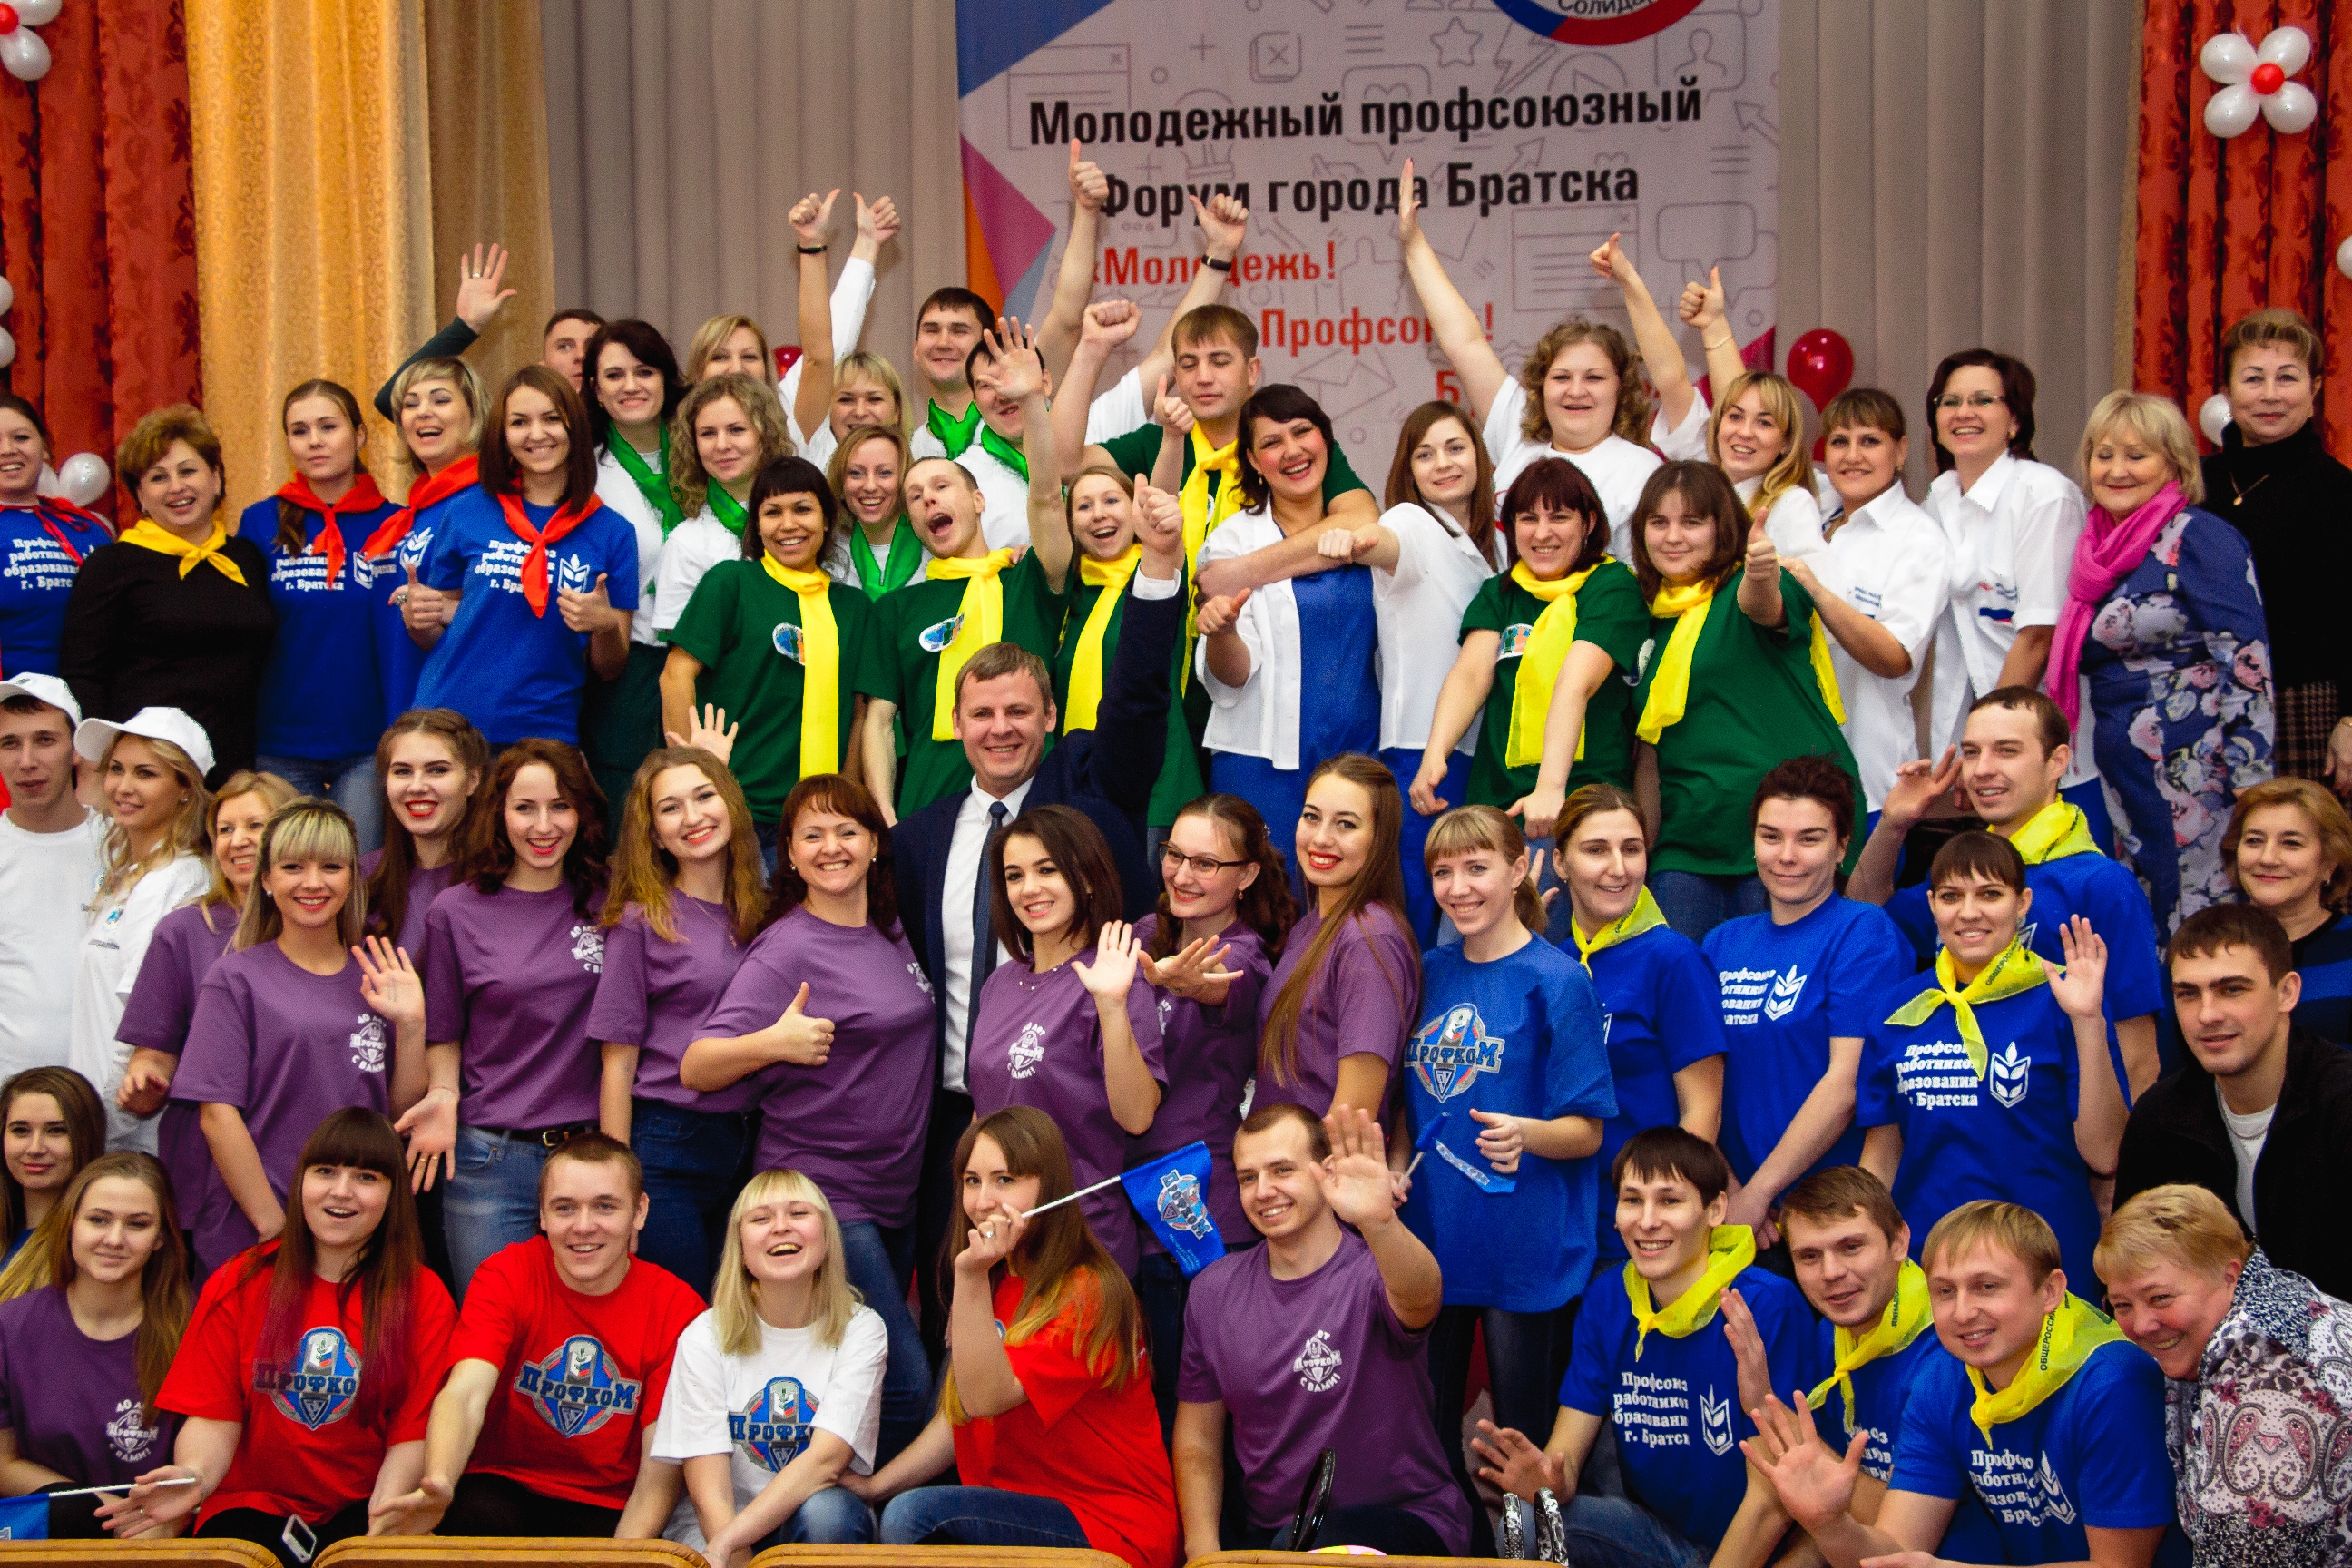 Местная профсоюзная организация. Молодежь и профсоюз. Профсоюзы, детские и молодежные организации. Молодежь профсоюз будущее. Молодежные профсоюзы России.